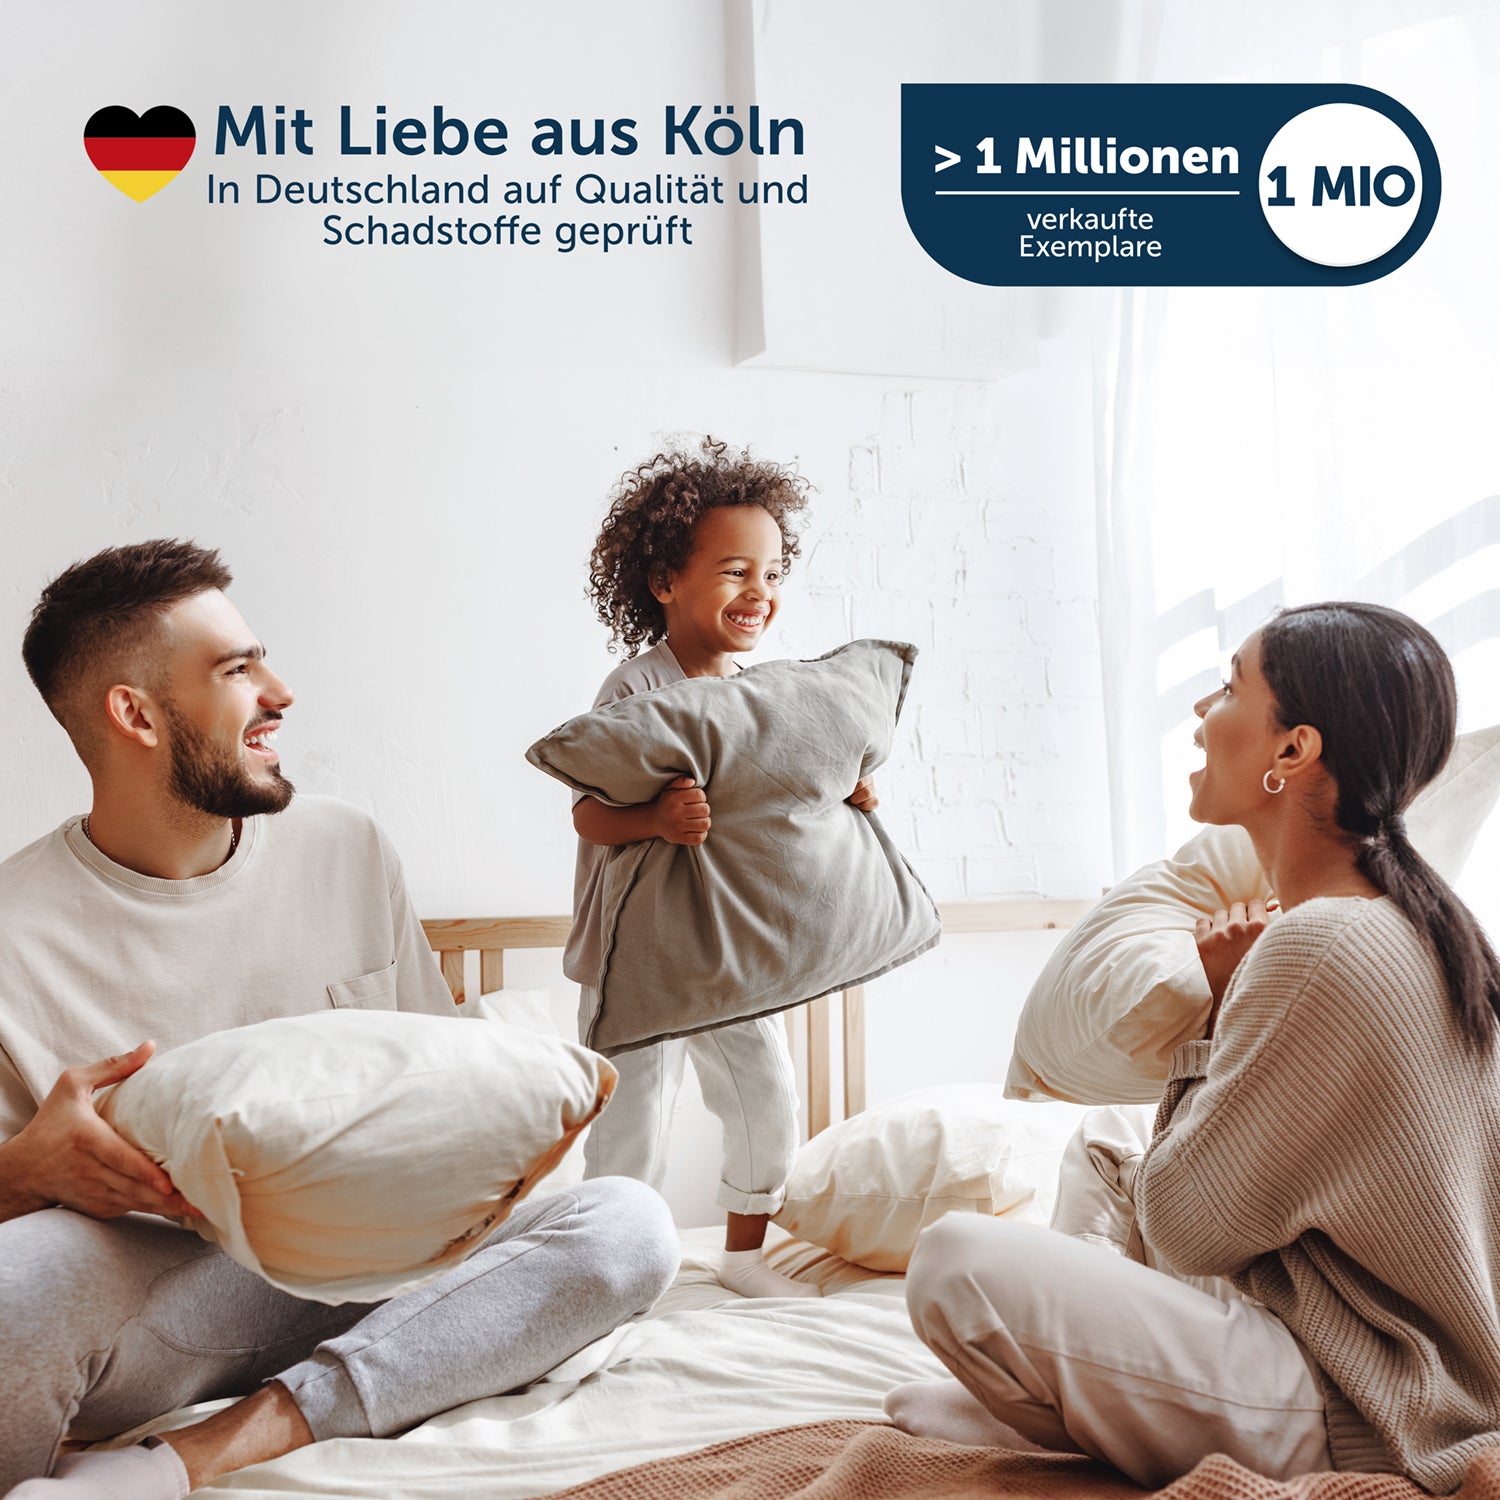 Familie mit zwei Erwachsenen und einem Kind, die auf einem Bett mit weißen Kissen spielen, mit Text "Mit Liebe aus Köln" und Hinweis auf eine Million verkaufte Exemplare.